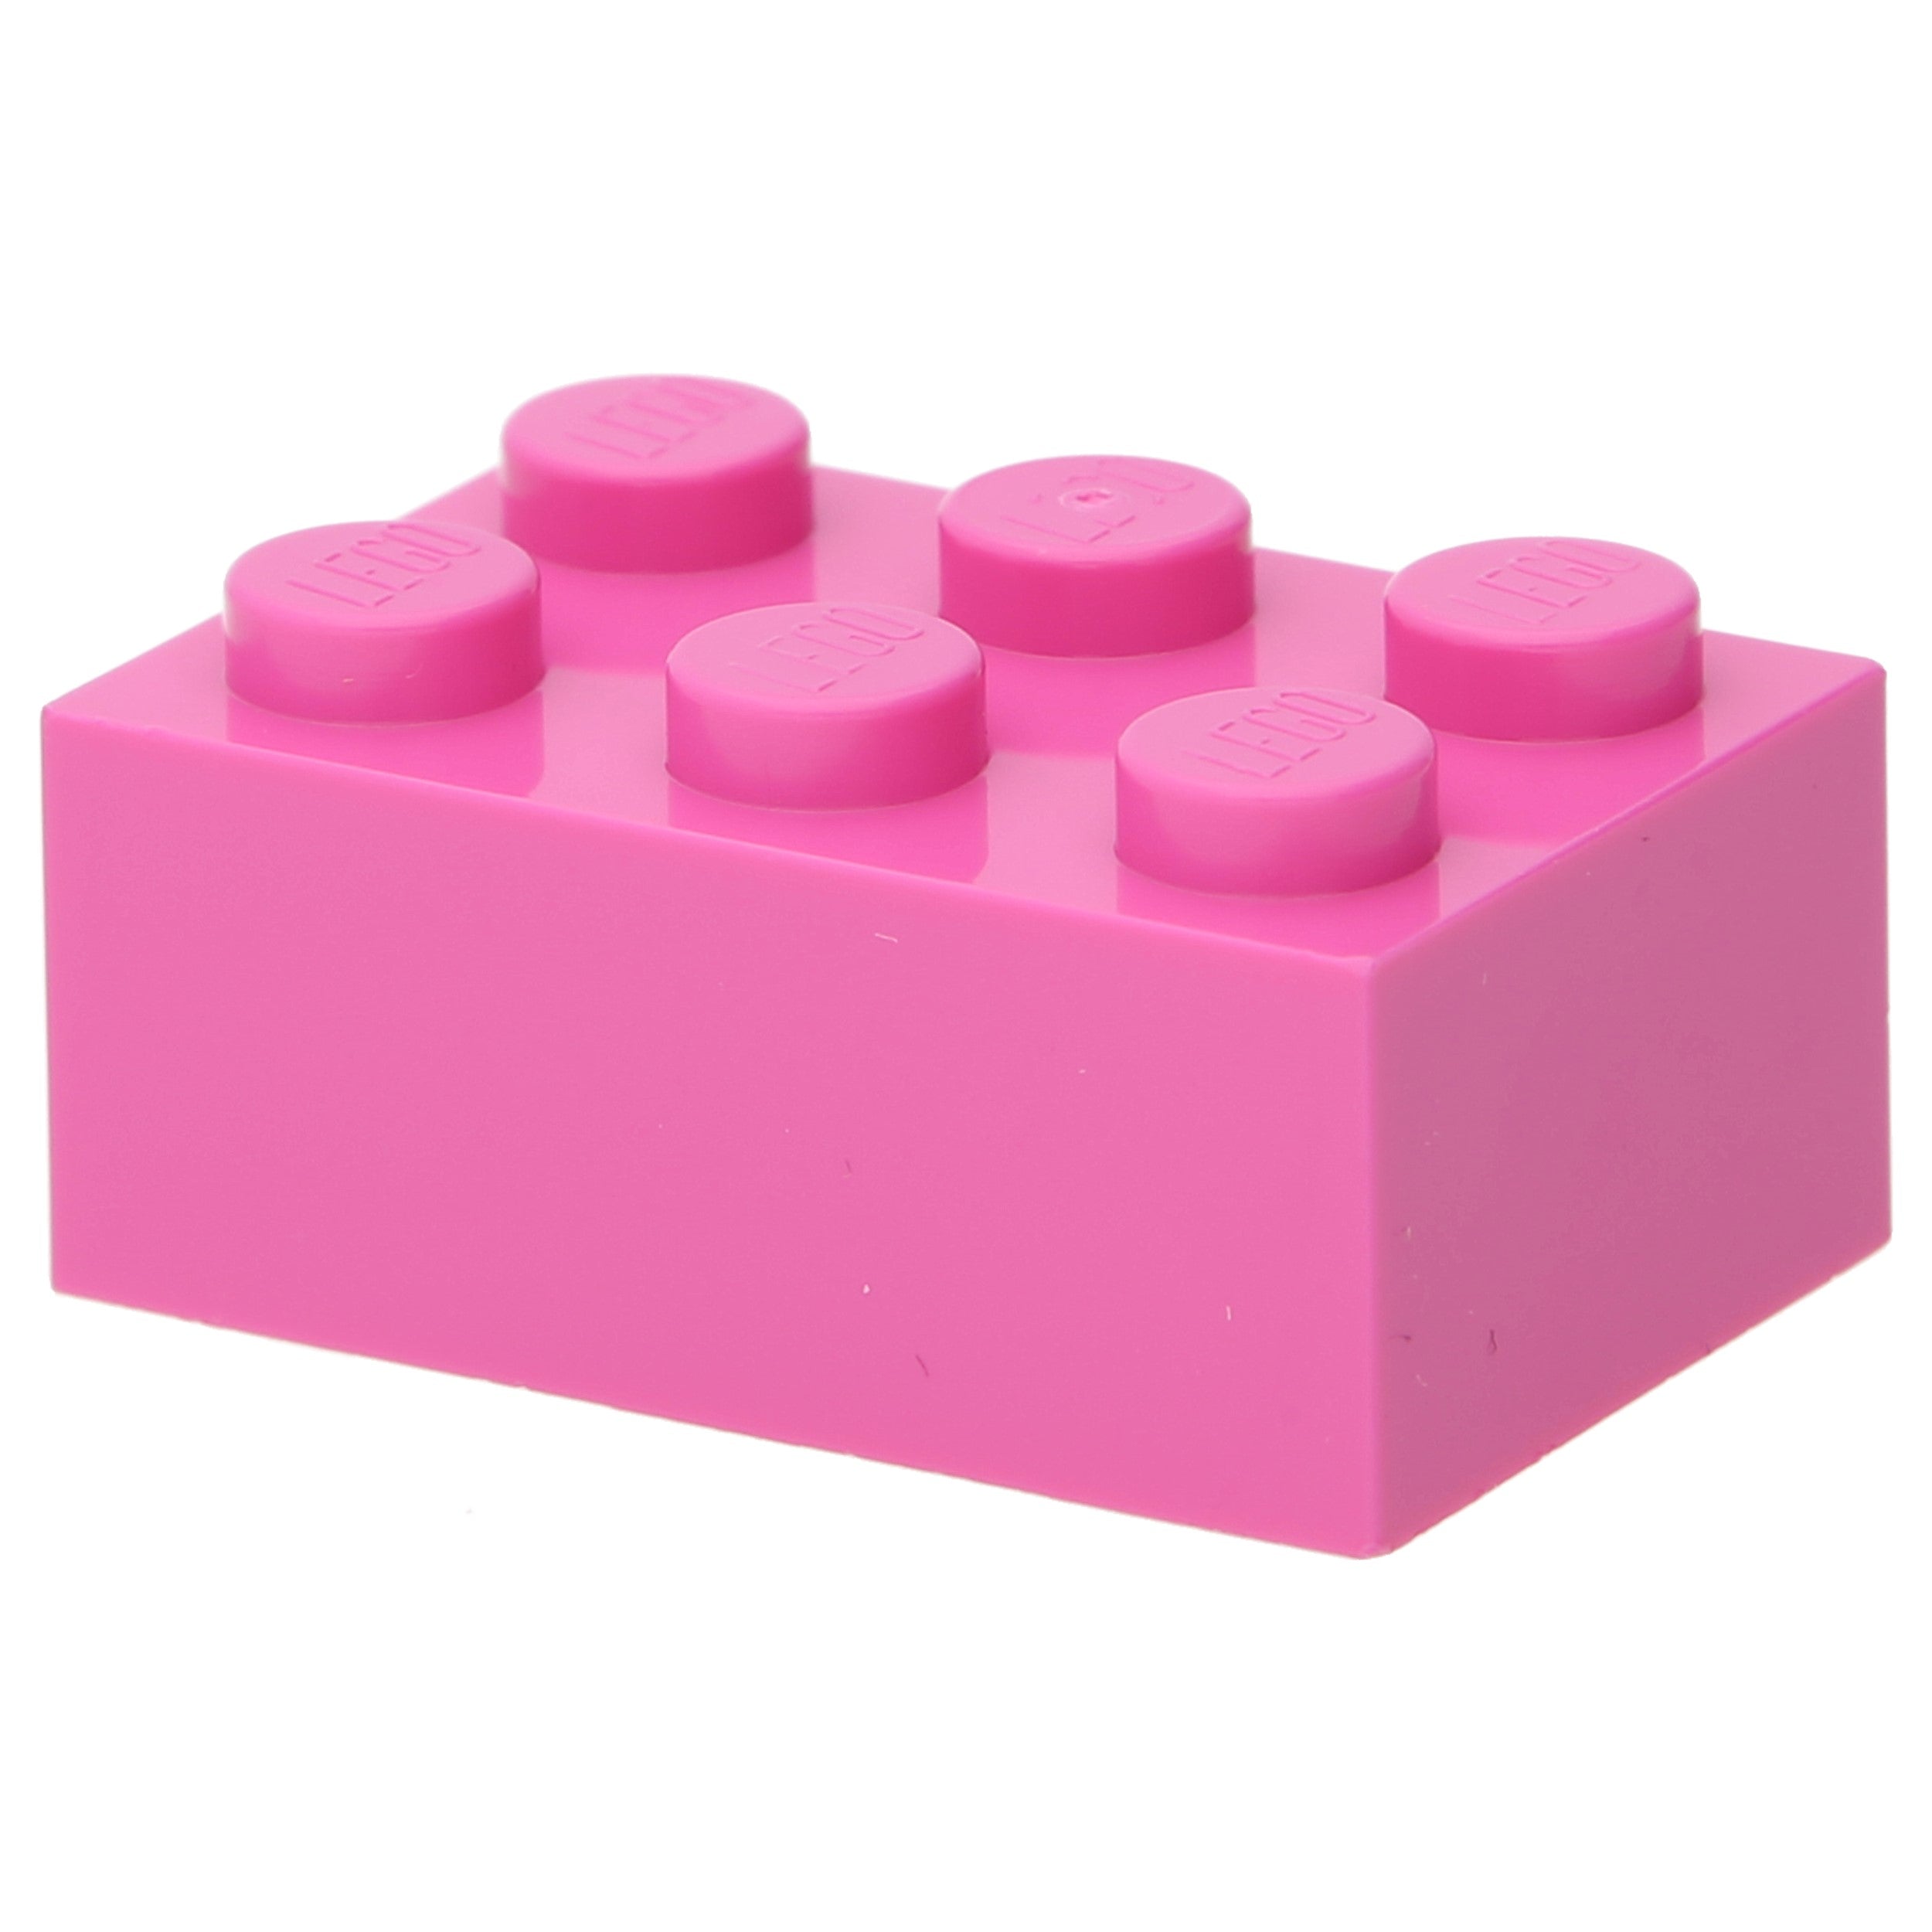 LEGO stone (standard) - stone 2 x 3